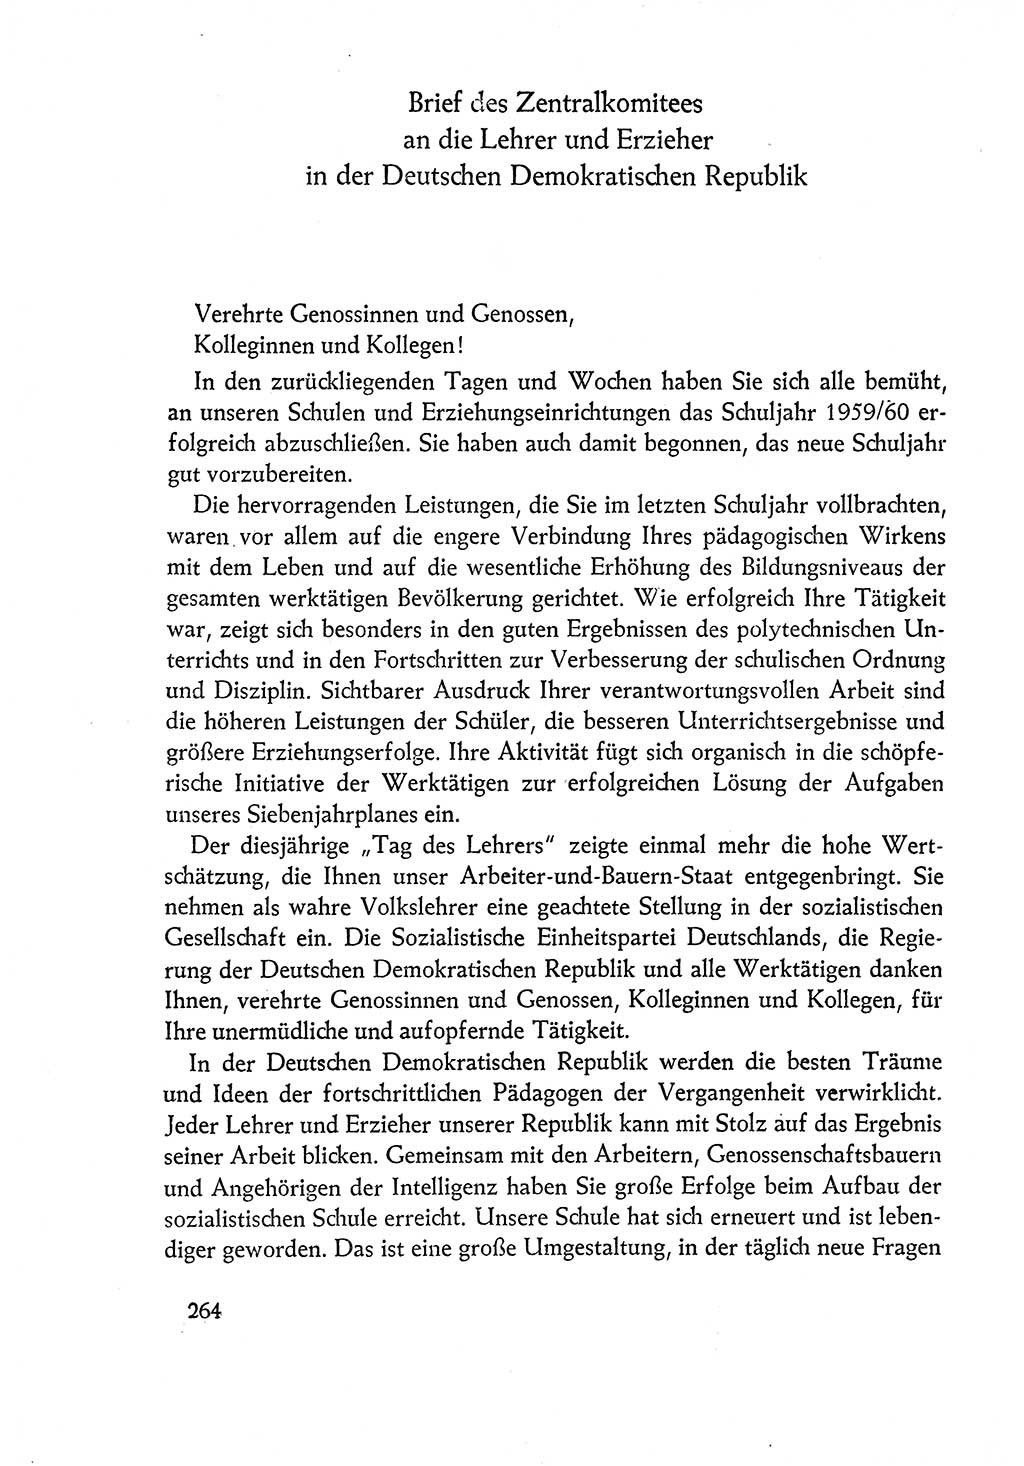 Dokumente der Sozialistischen Einheitspartei Deutschlands (SED) [Deutsche Demokratische Republik (DDR)] 1960-1961, Seite 264 (Dok. SED DDR 1960-1961, S. 264)